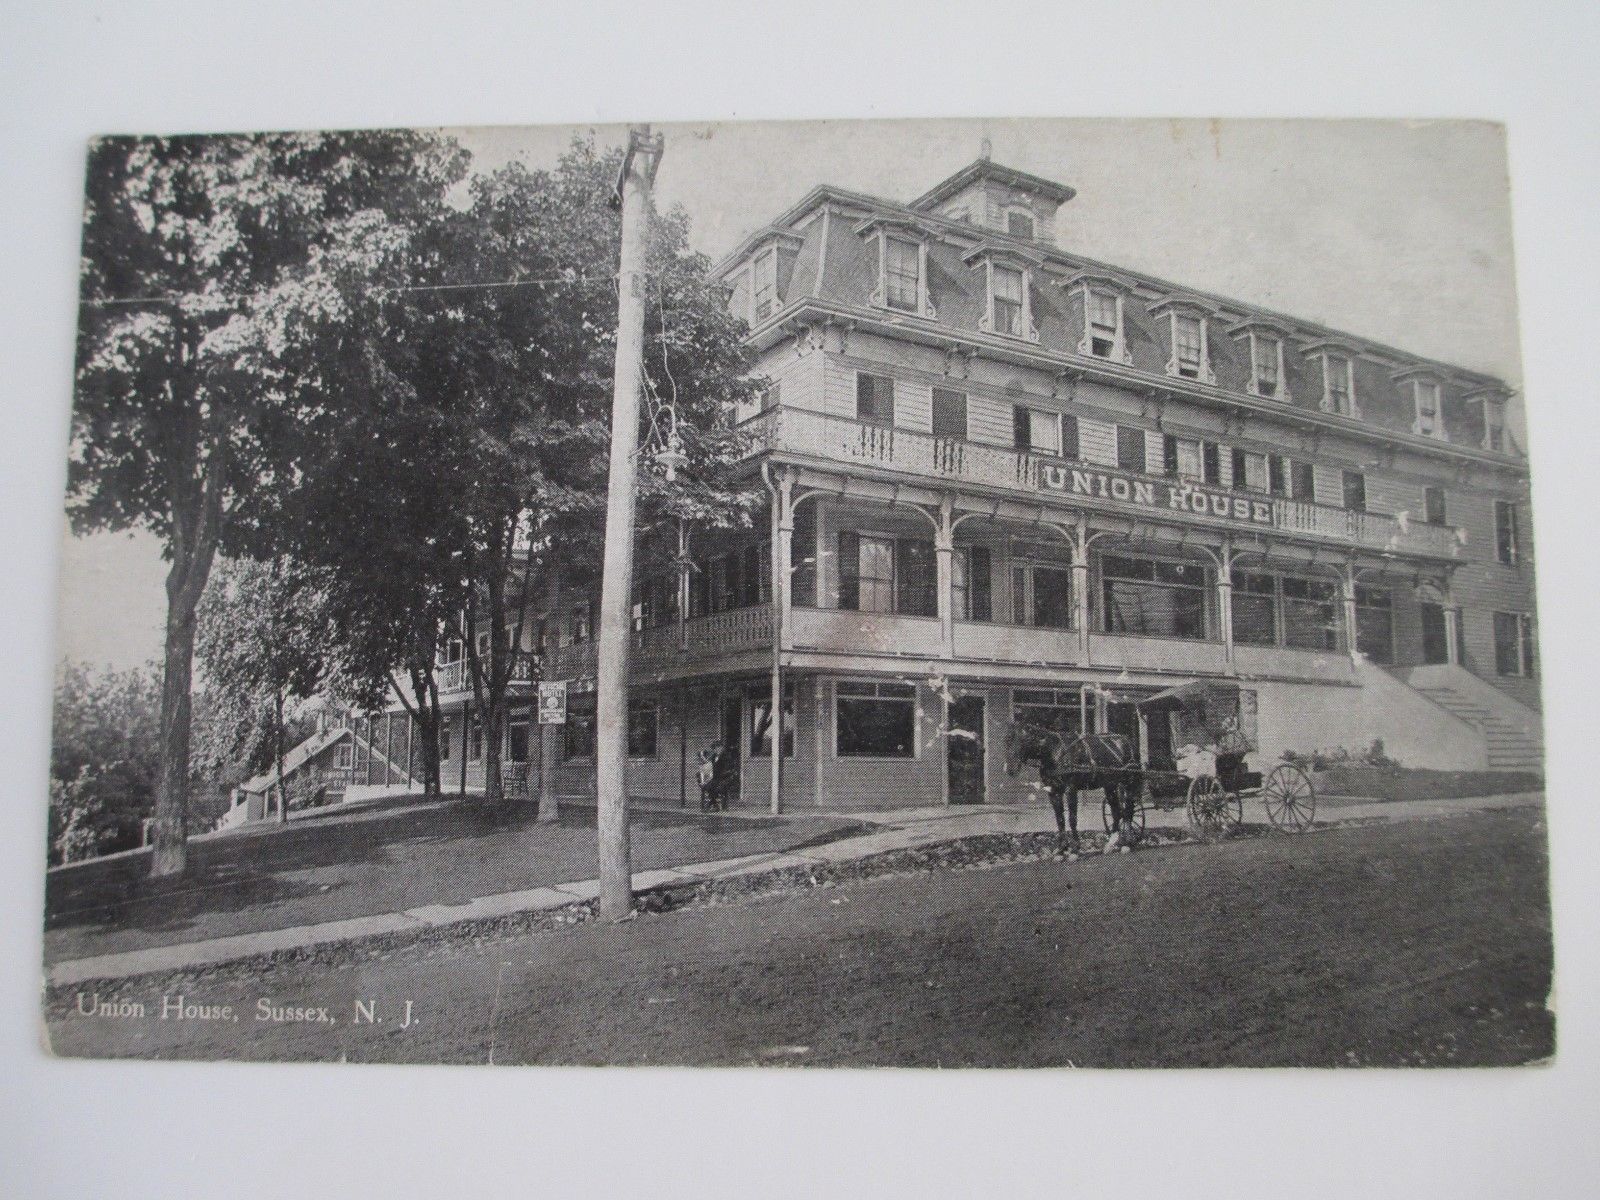 Sussex - Union House - c 1910